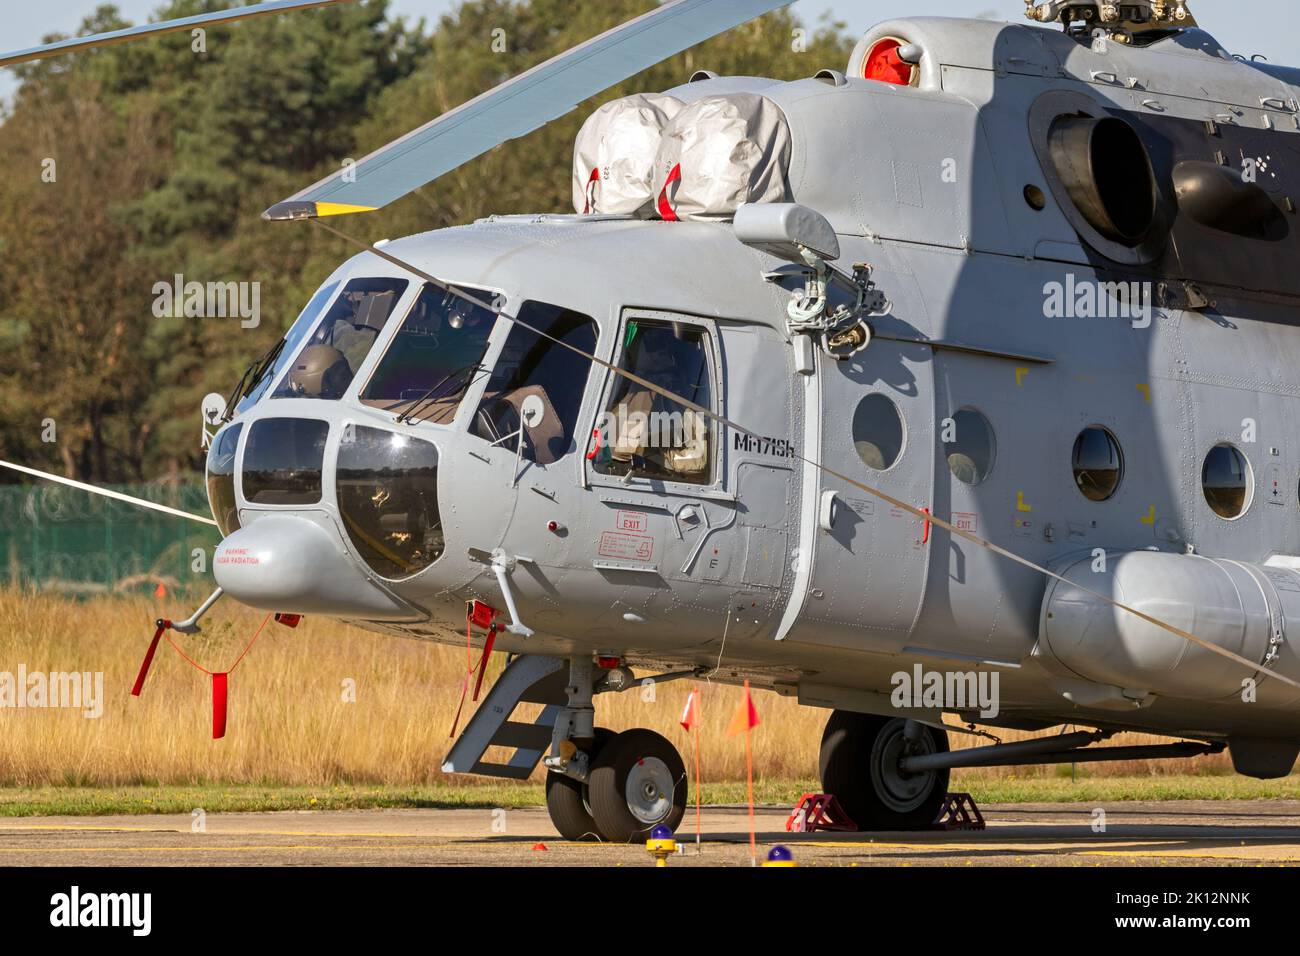 Hélicoptère de transport mi-171Sh de la Force aérienne croate sur le tarmac de la base aérienne Kleine-Brogel. Belgique - 14 septembre 2019. Banque D'Images